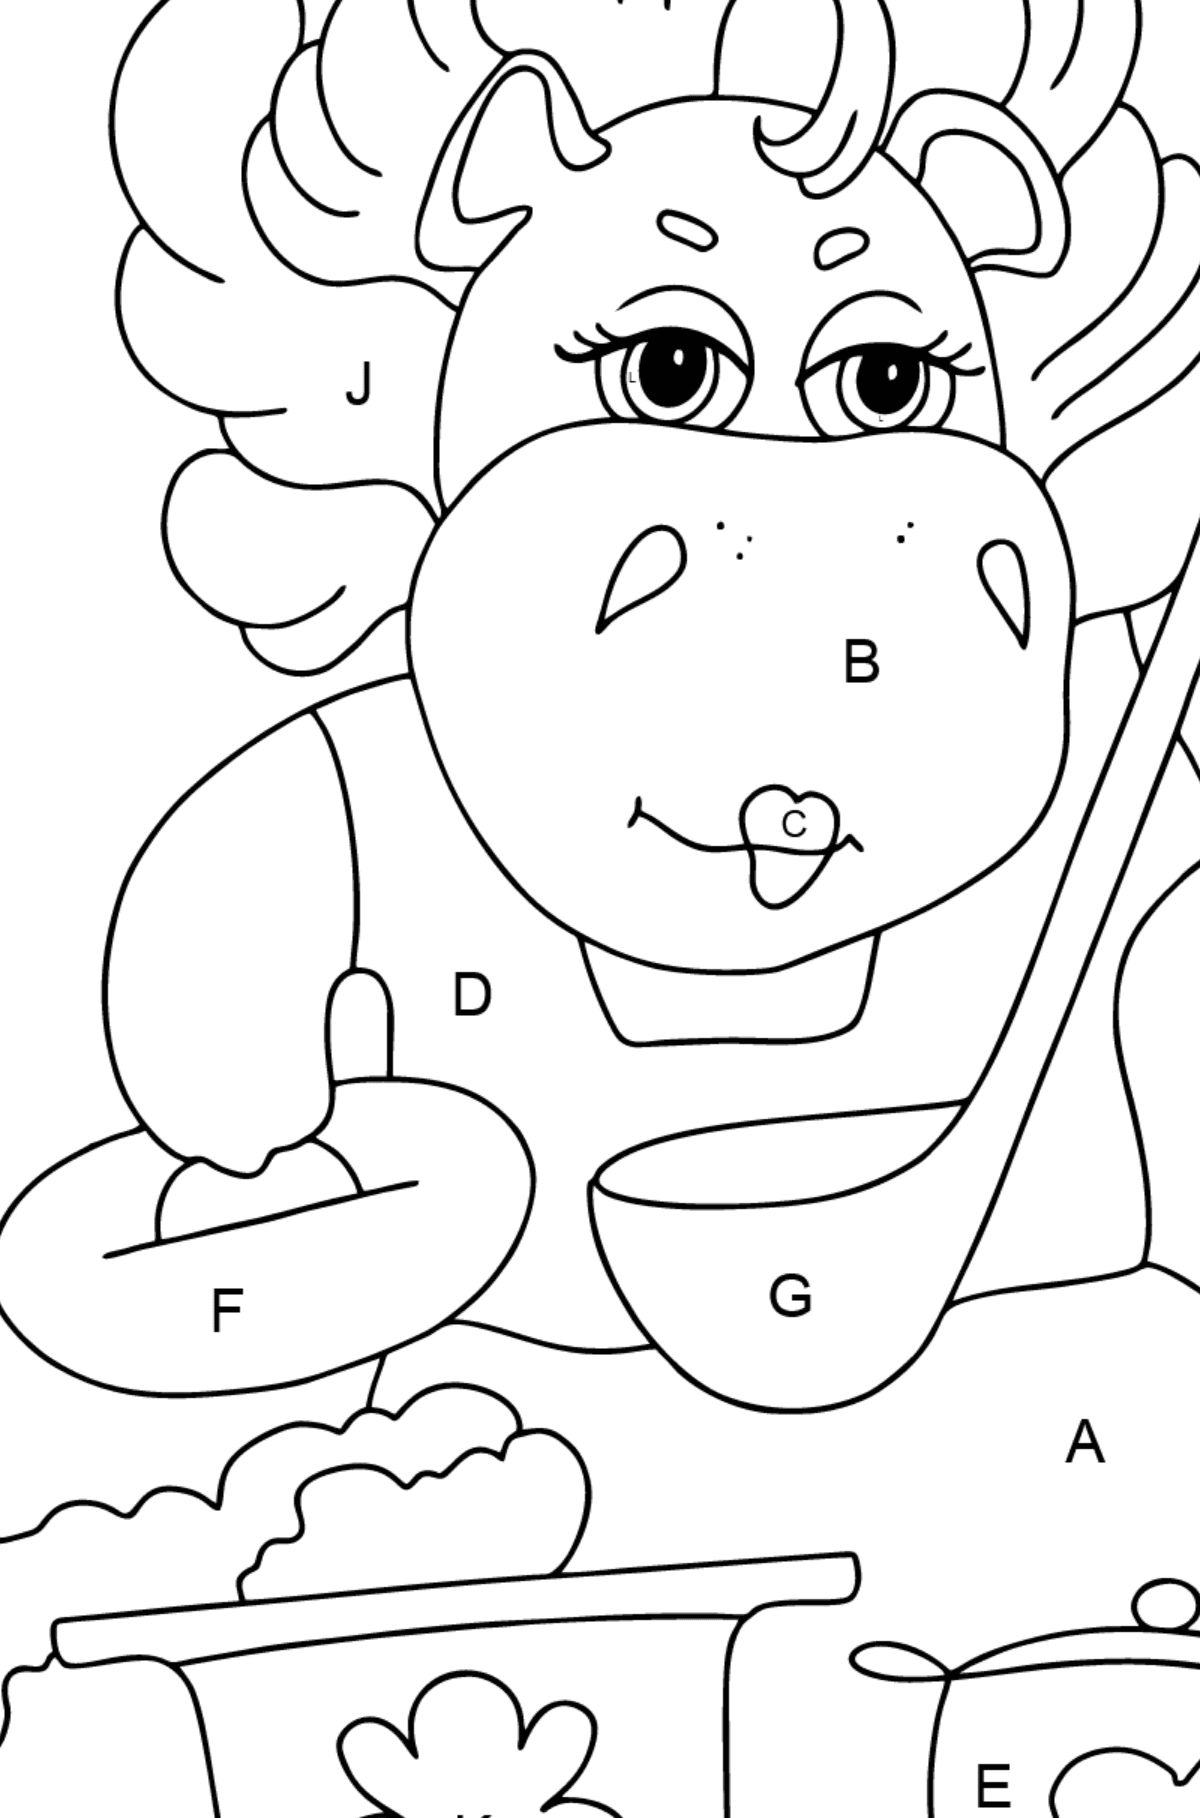 Dibujo de hipopótamo mágico (simple) para colorear - Colorear por Letras para Niños